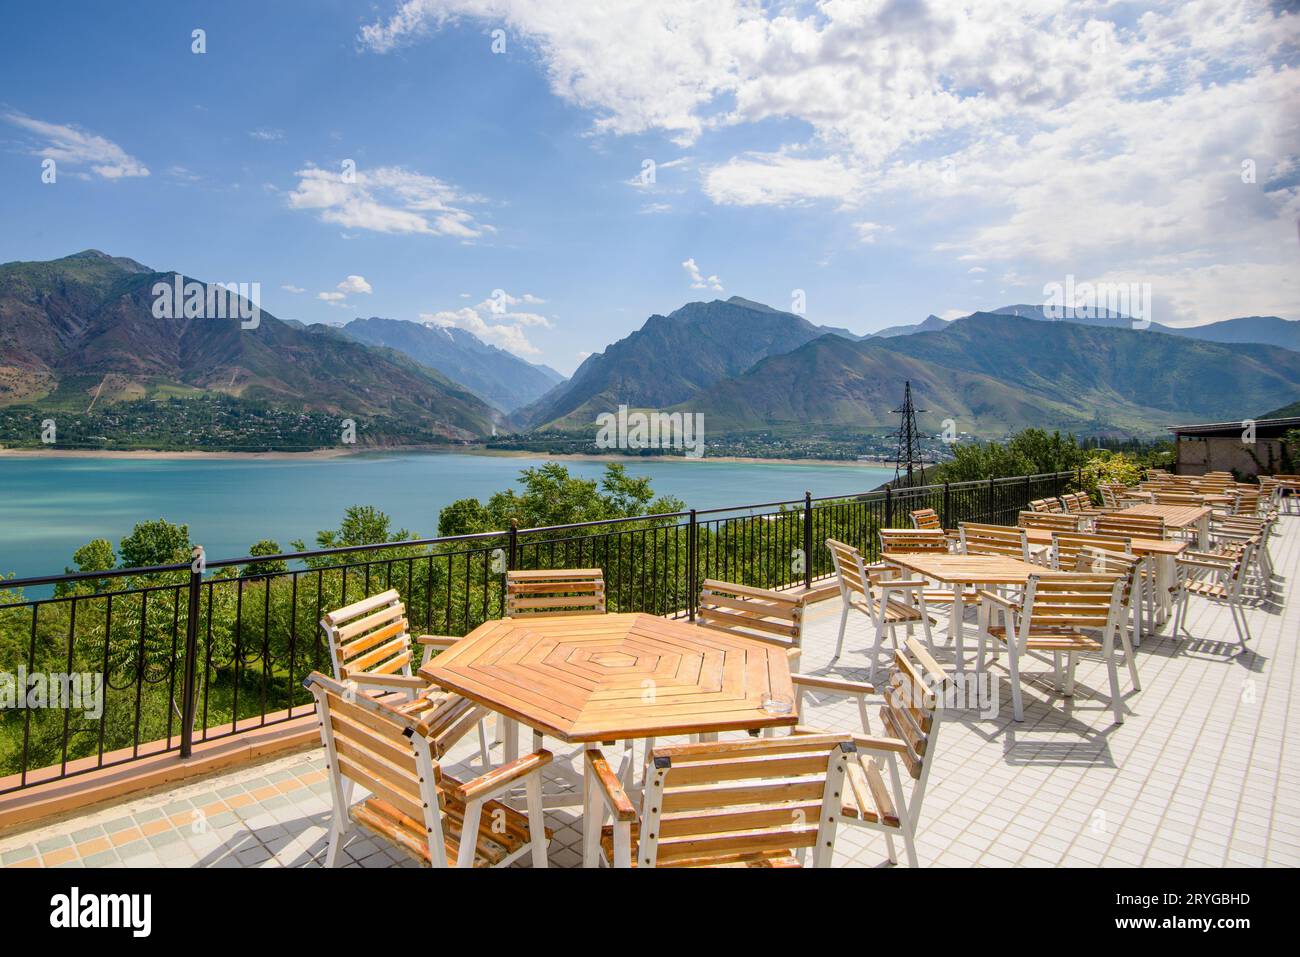 Eine wunderschöne Aufnahme von Café-Sitzen im Freien nahe der Küste in einem Resort in den Bergen Zentralasiens Stockfoto